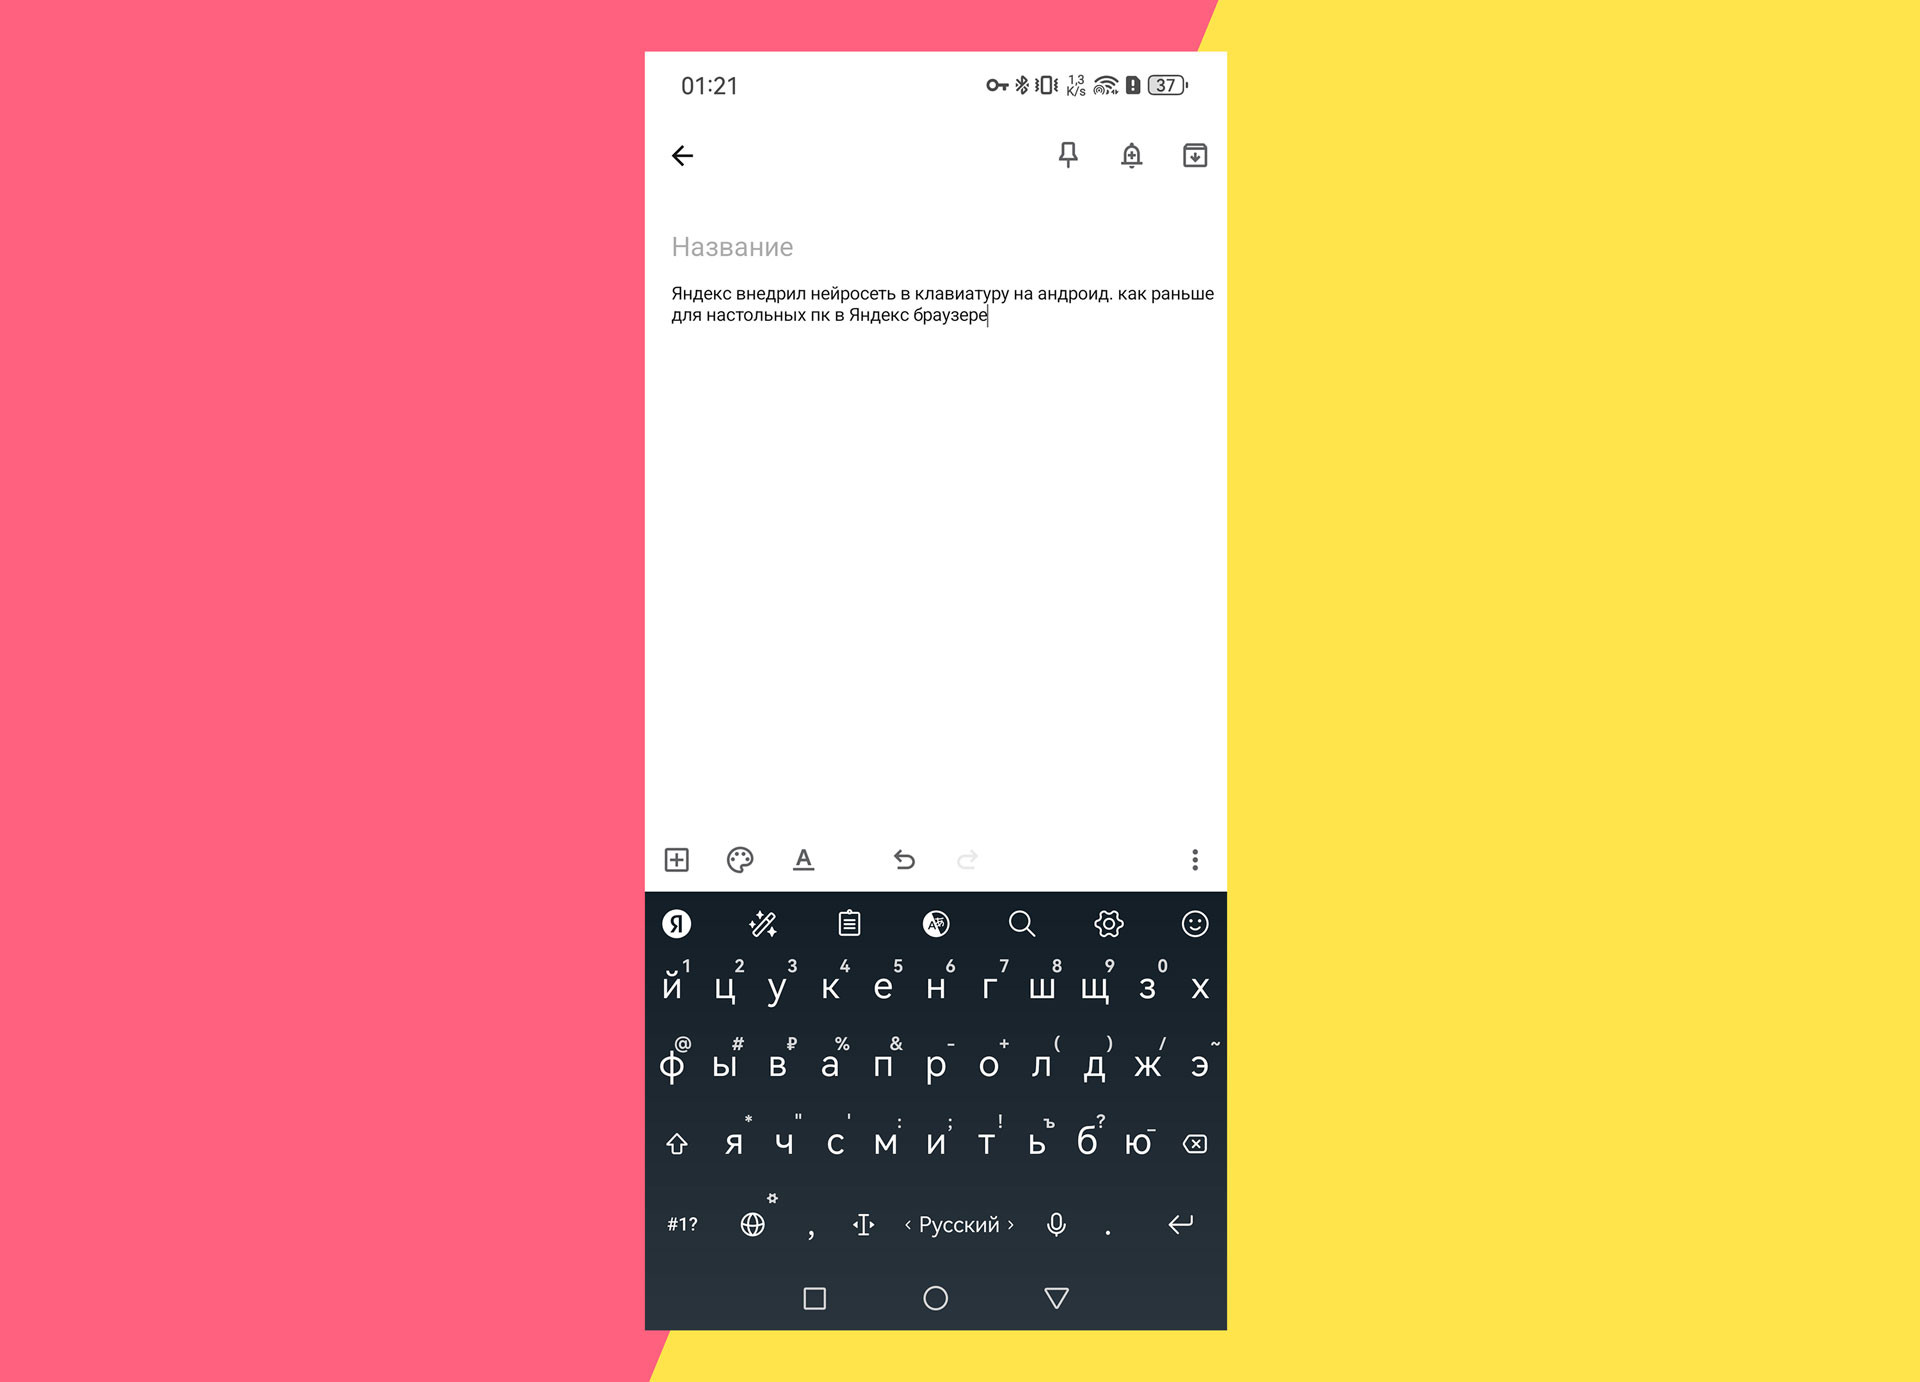 Яндекс Клавиатура для Android получила ИИ: поможет писать тексты